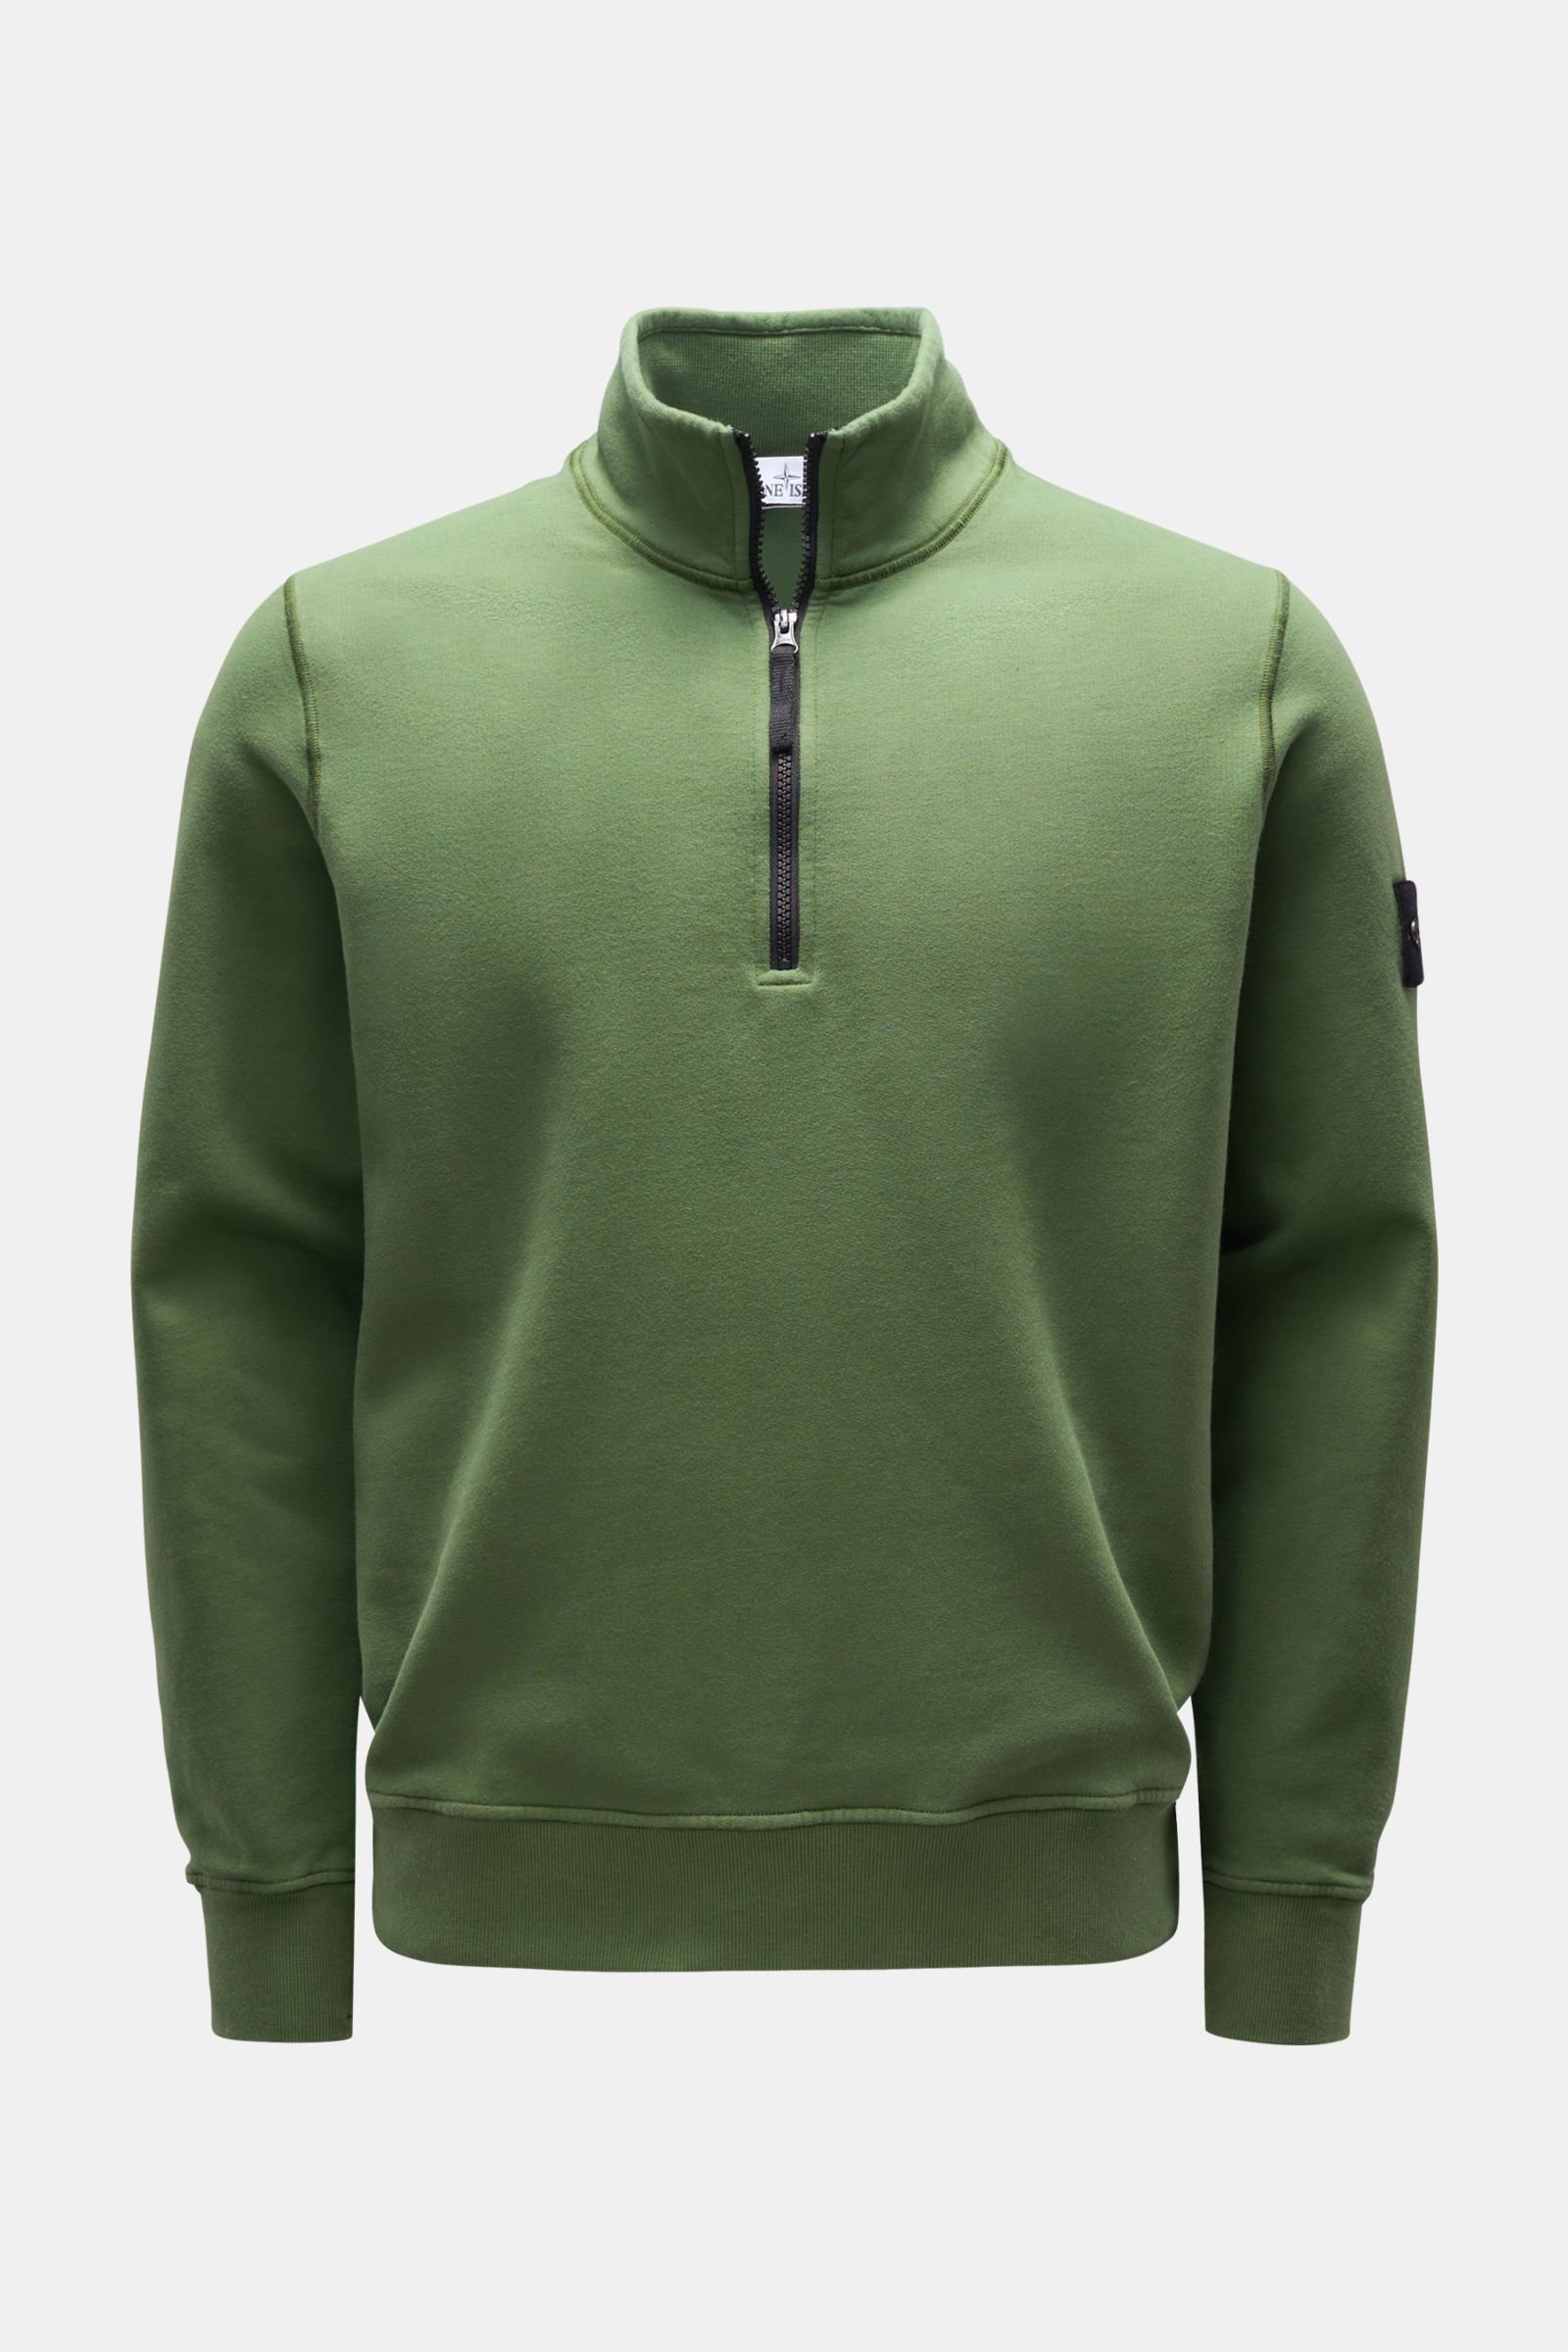 Sweat half-zip jumper green